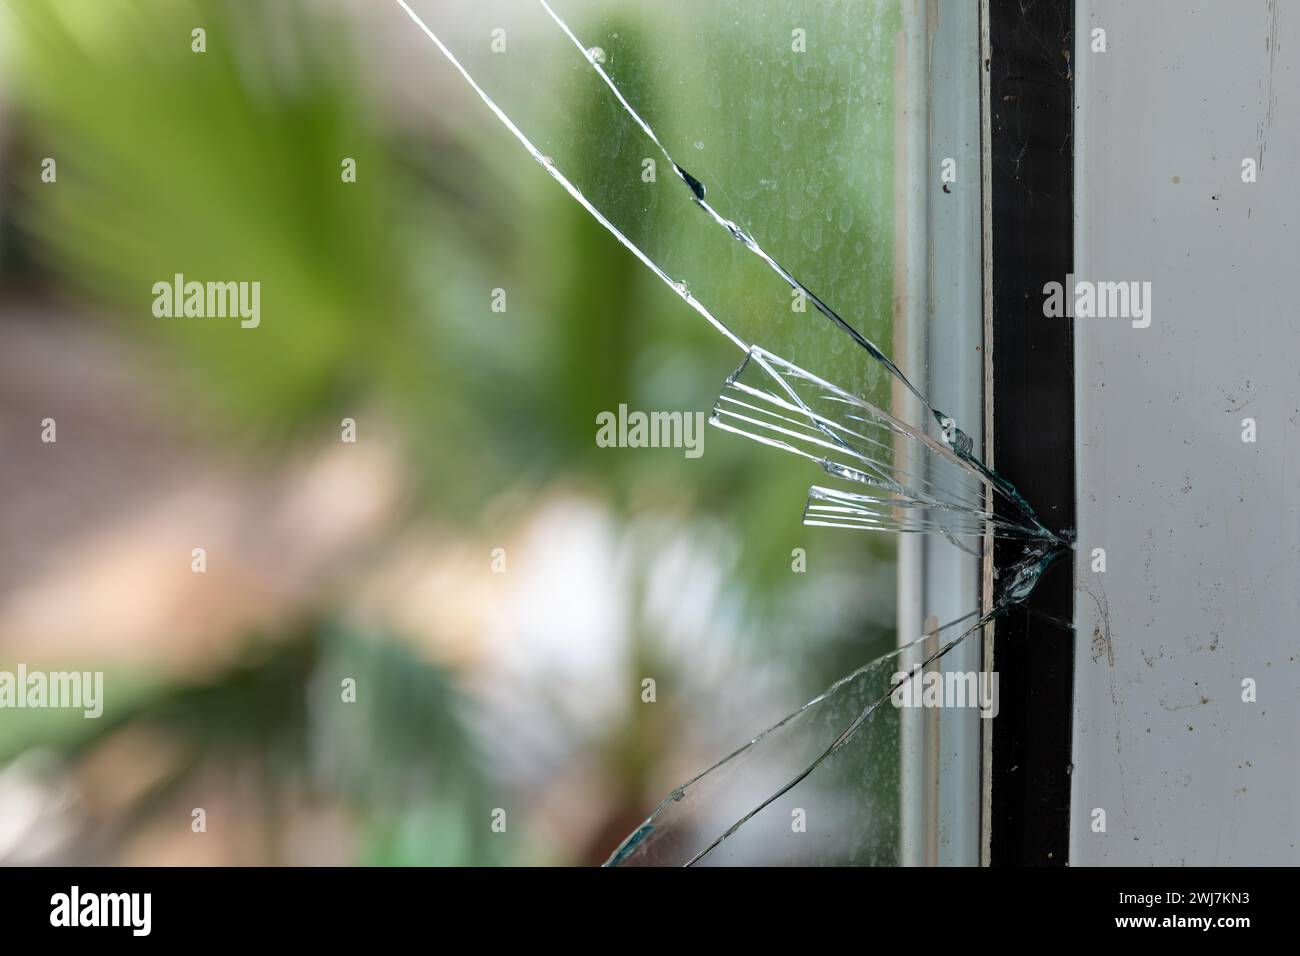 Rottura del cristallo: Sostituzione di emergenza del vetro e danni alla proprietà Foto Stock